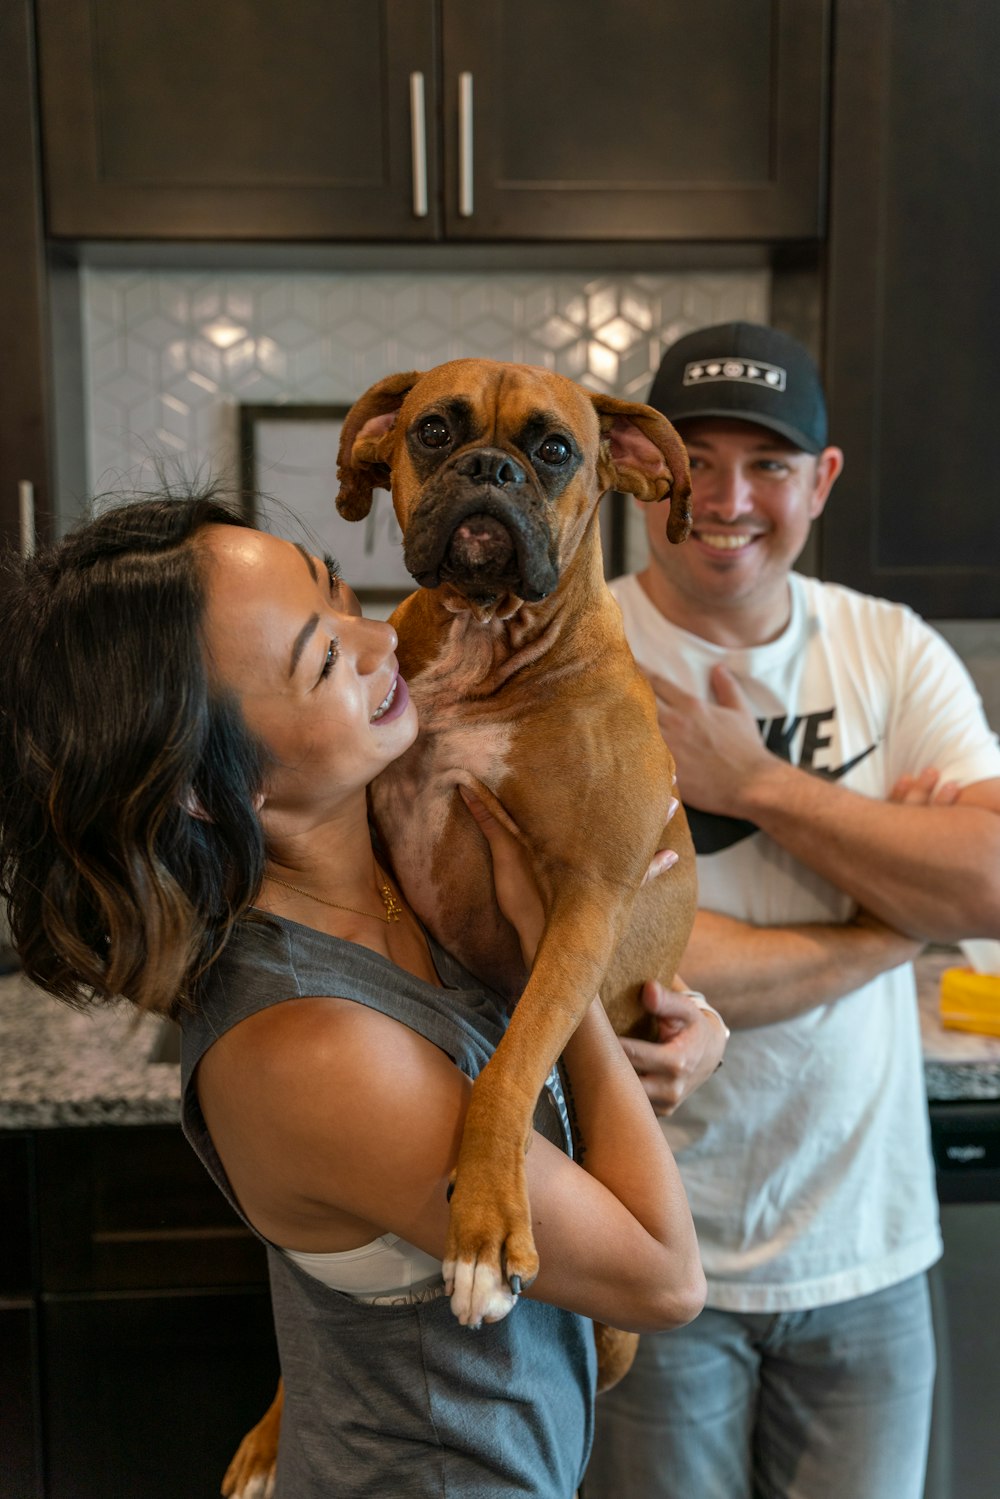 Un hombre y una mujer sosteniendo un perro en una cocina